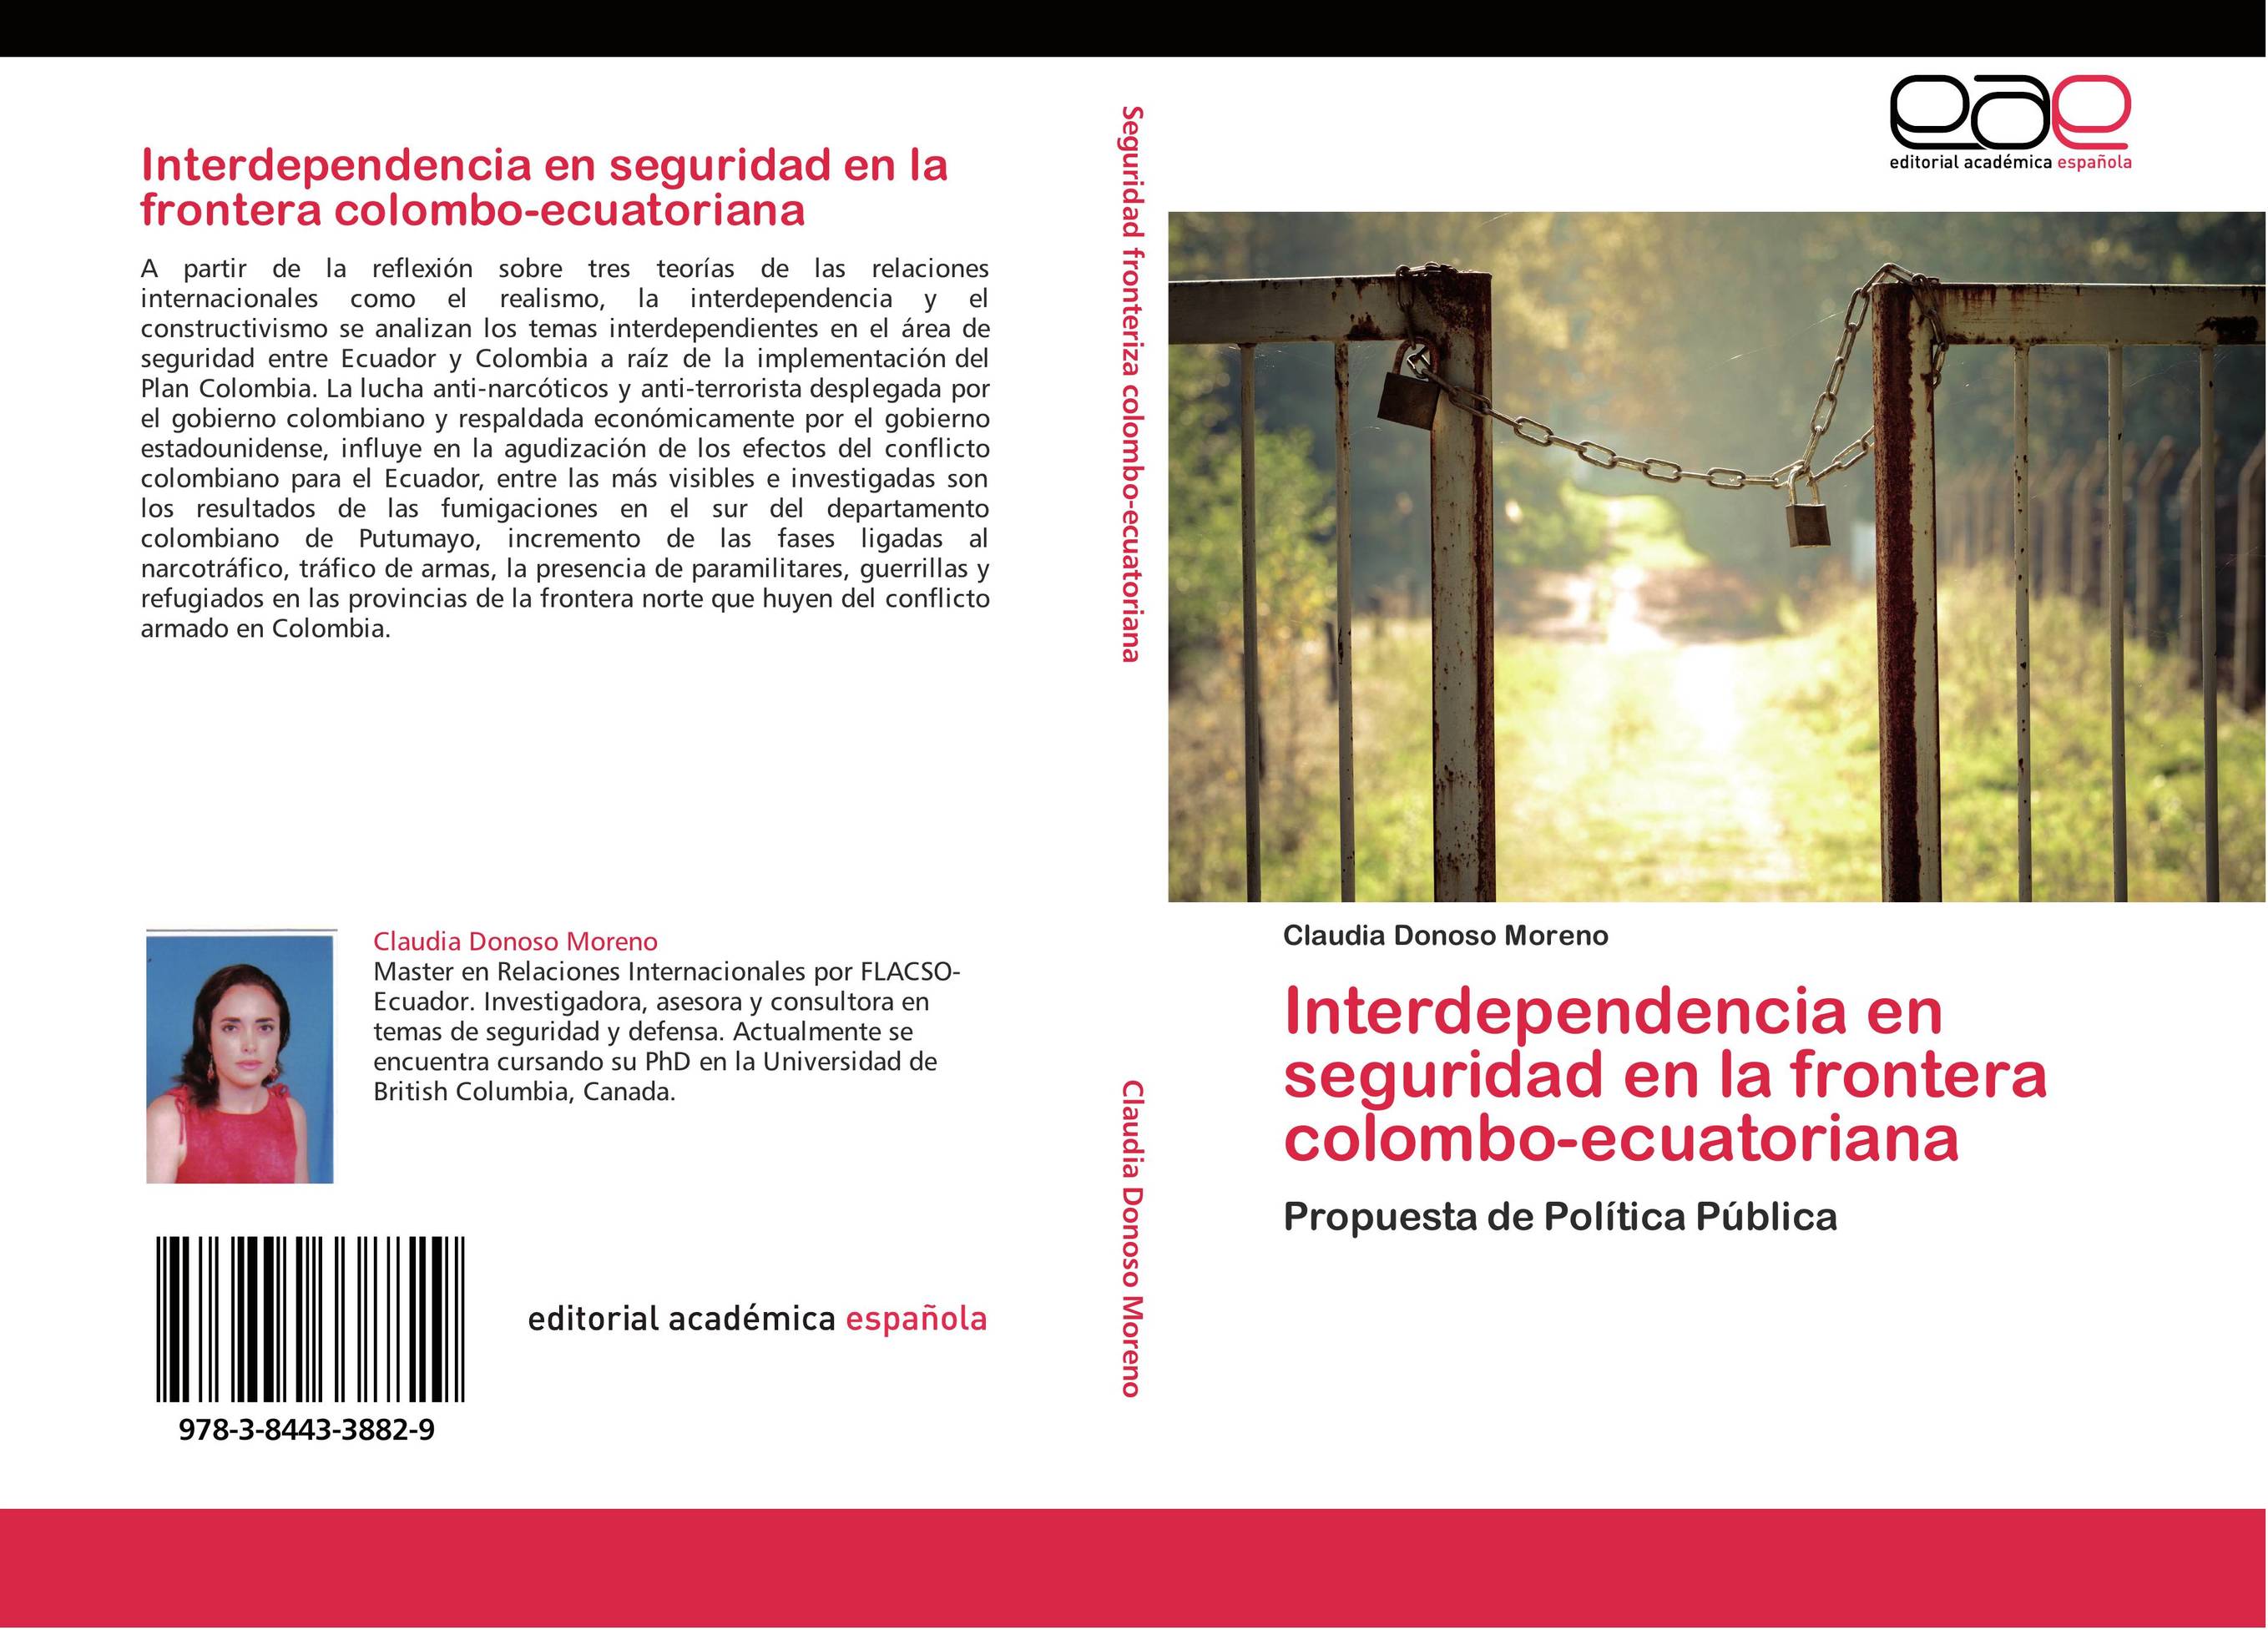 Interdependencia en seguridad en la frontera colombo-ecuatoriana